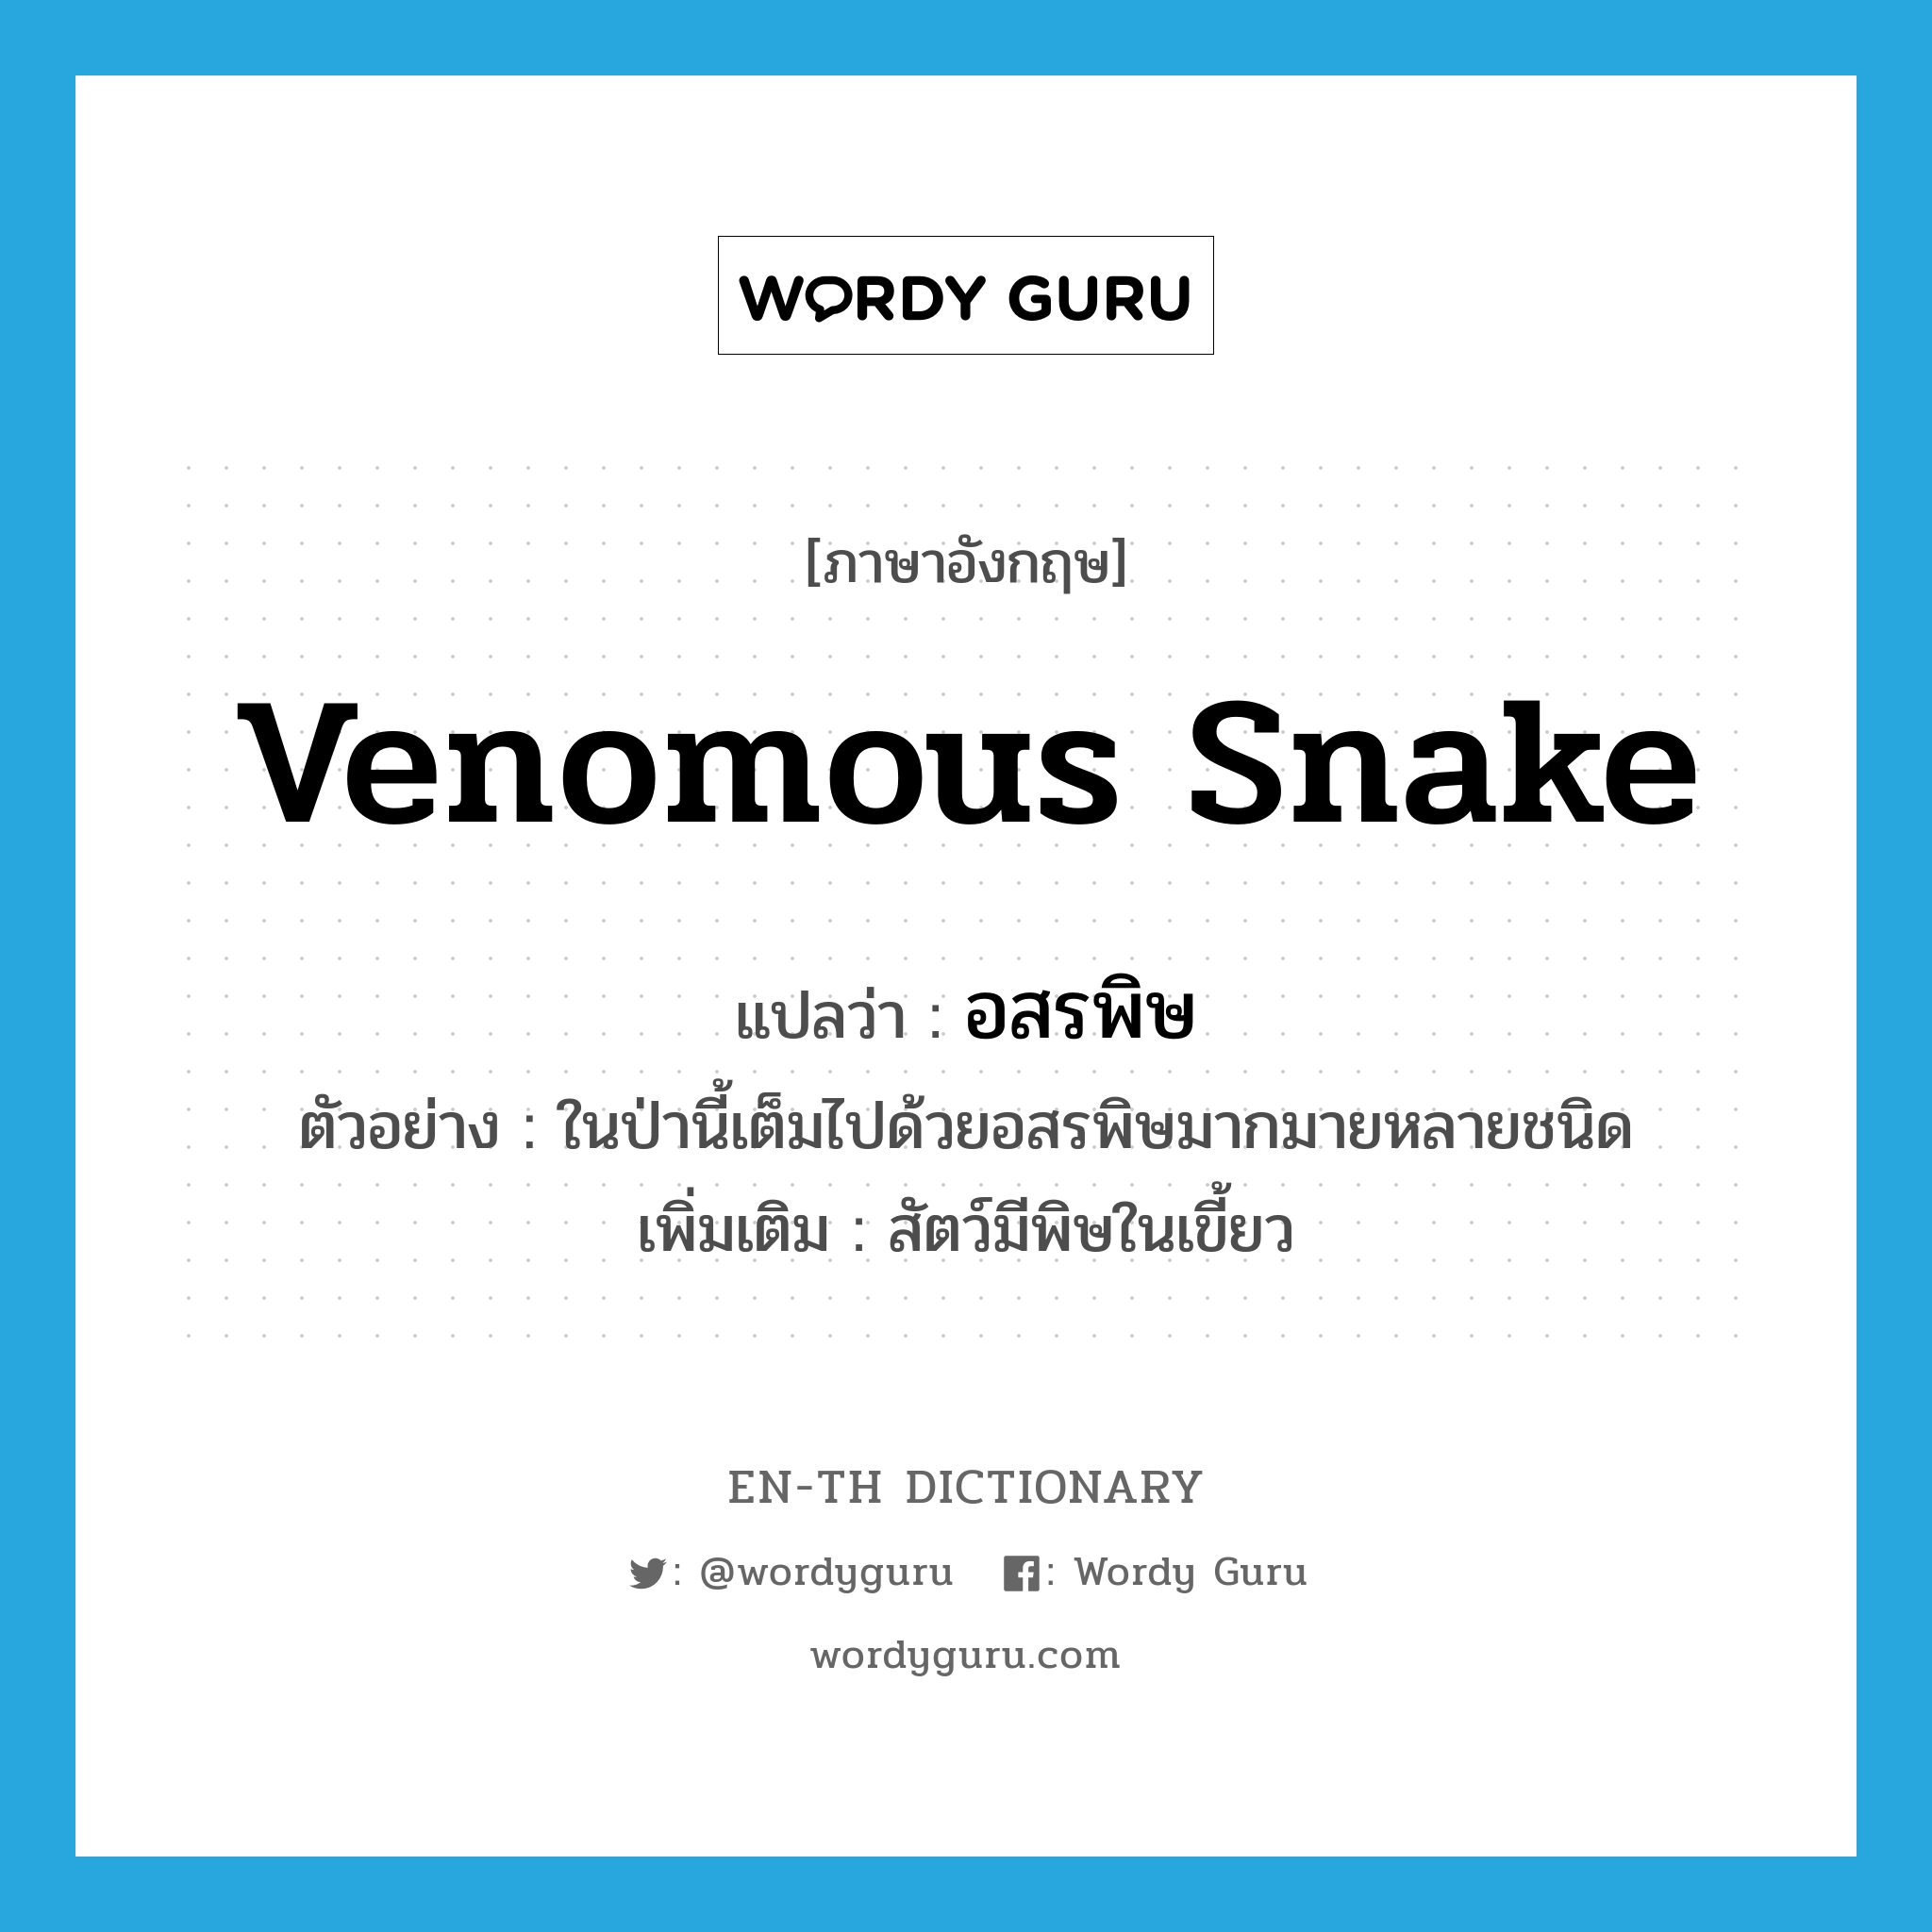 venomous snake แปลว่า?, คำศัพท์ภาษาอังกฤษ venomous snake แปลว่า อสรพิษ ประเภท N ตัวอย่าง ในป่านี้เต็มไปด้วยอสรพิษมากมายหลายชนิด เพิ่มเติม สัตว์มีพิษในเขี้ยว หมวด N